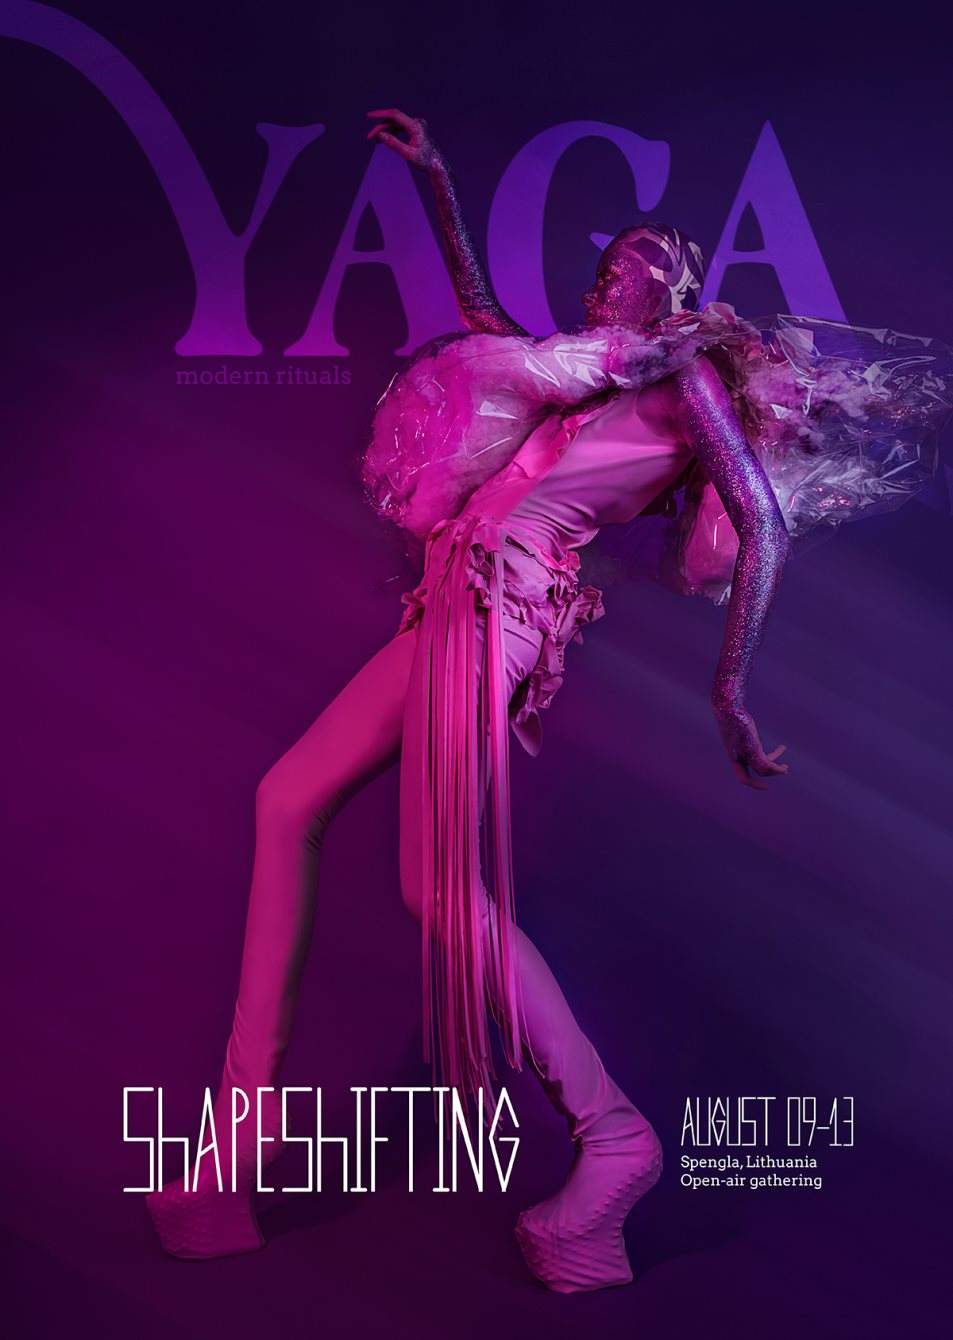 Yaga Gathering 2018 Shapeshifting - Flyer front